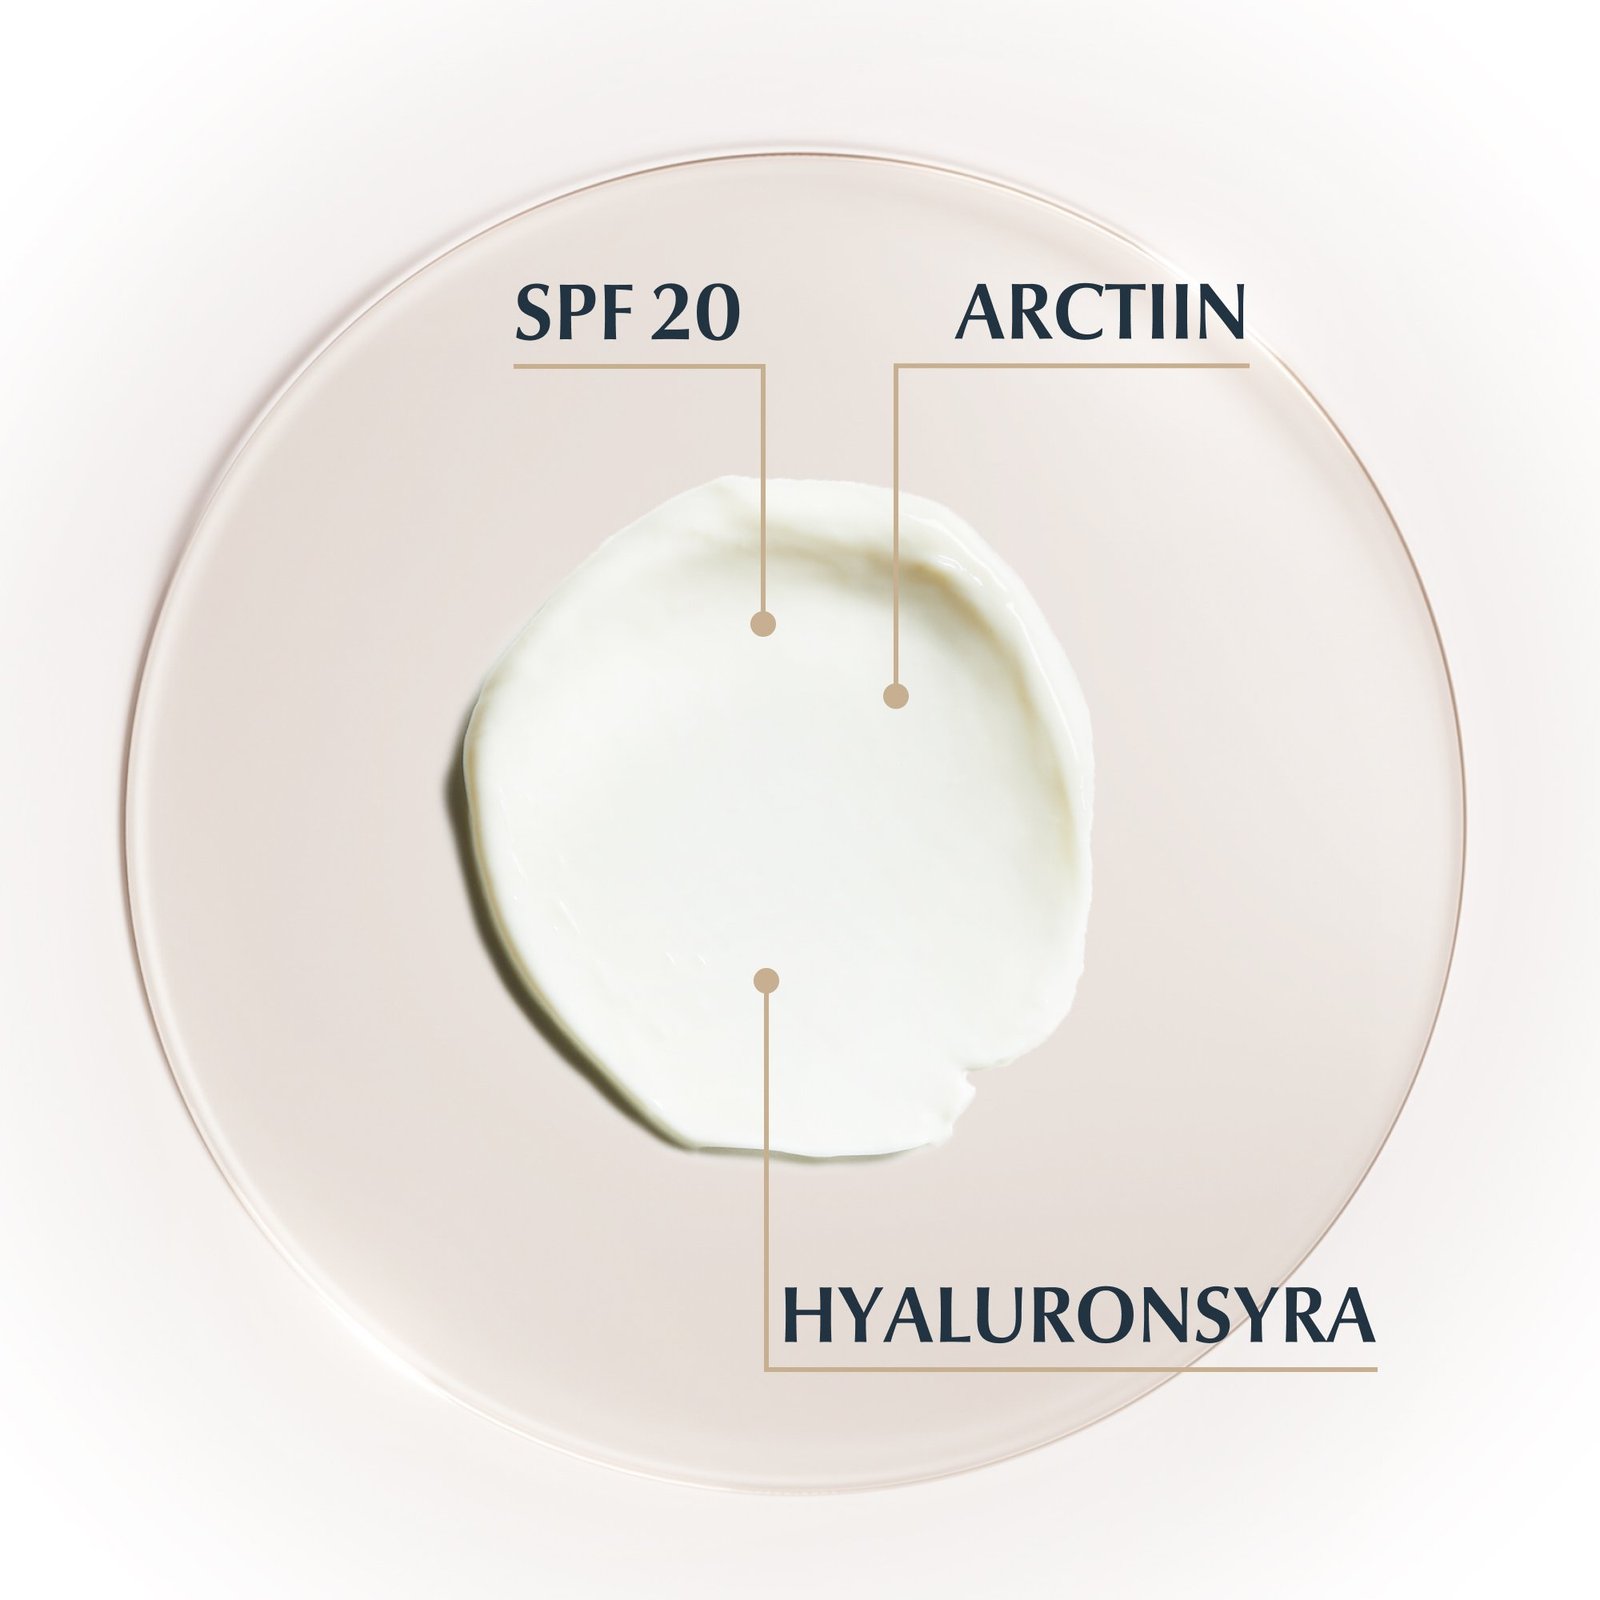 Eucerin Hyaluron-Filler + Elasticity SPF20 Eye Cream 15 ml